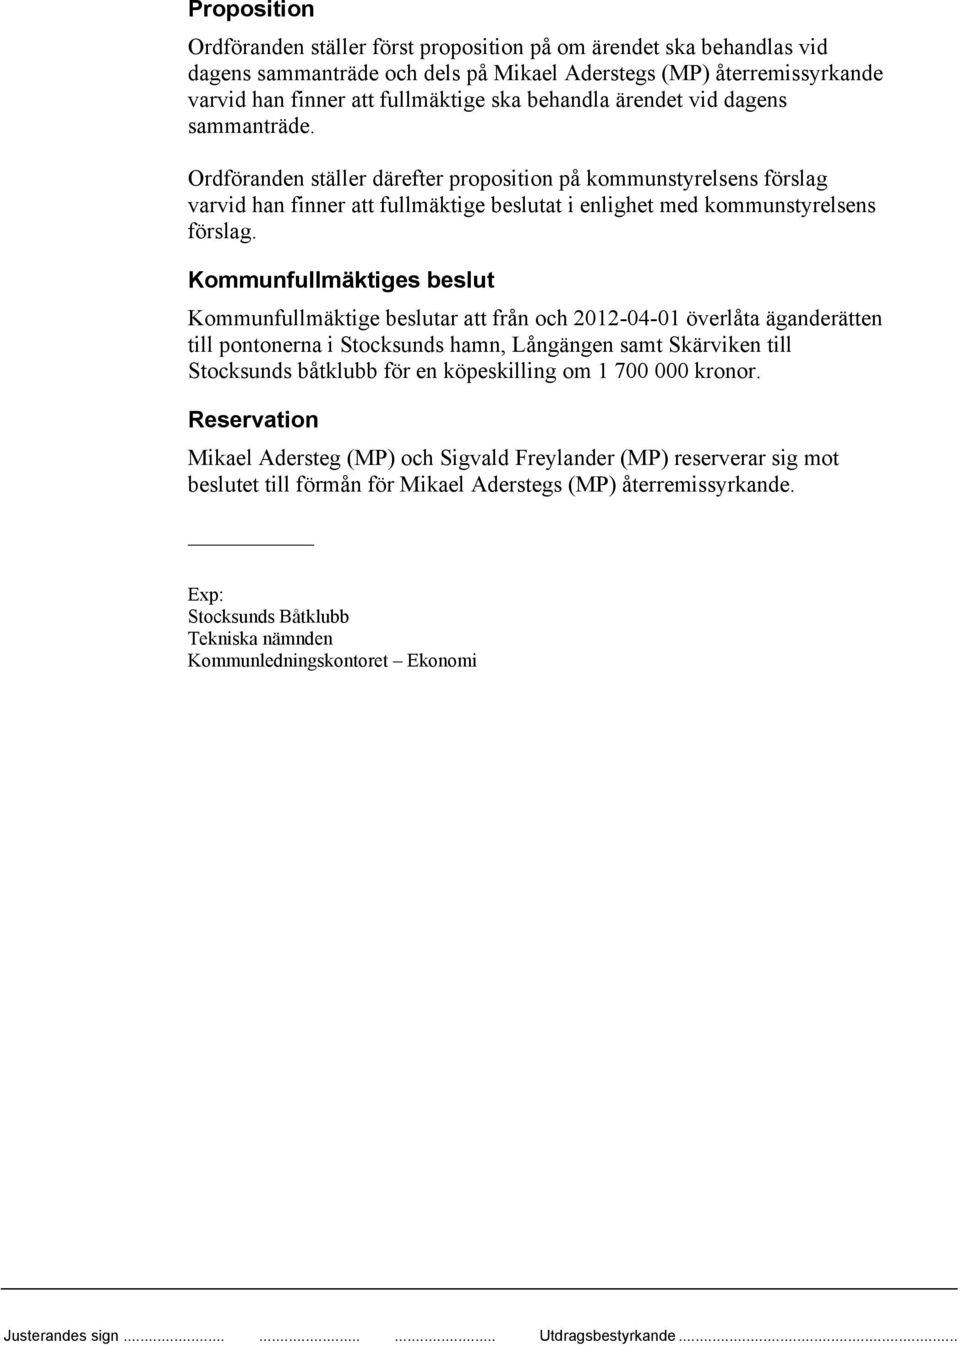 Kommunfullmäktige beslutar att från och 2012-04-01 överlåta äganderätten till pontonerna i Stocksunds hamn, Långängen samt Skärviken till Stocksunds båtklubb för en köpeskilling om 1 700 000 kronor.